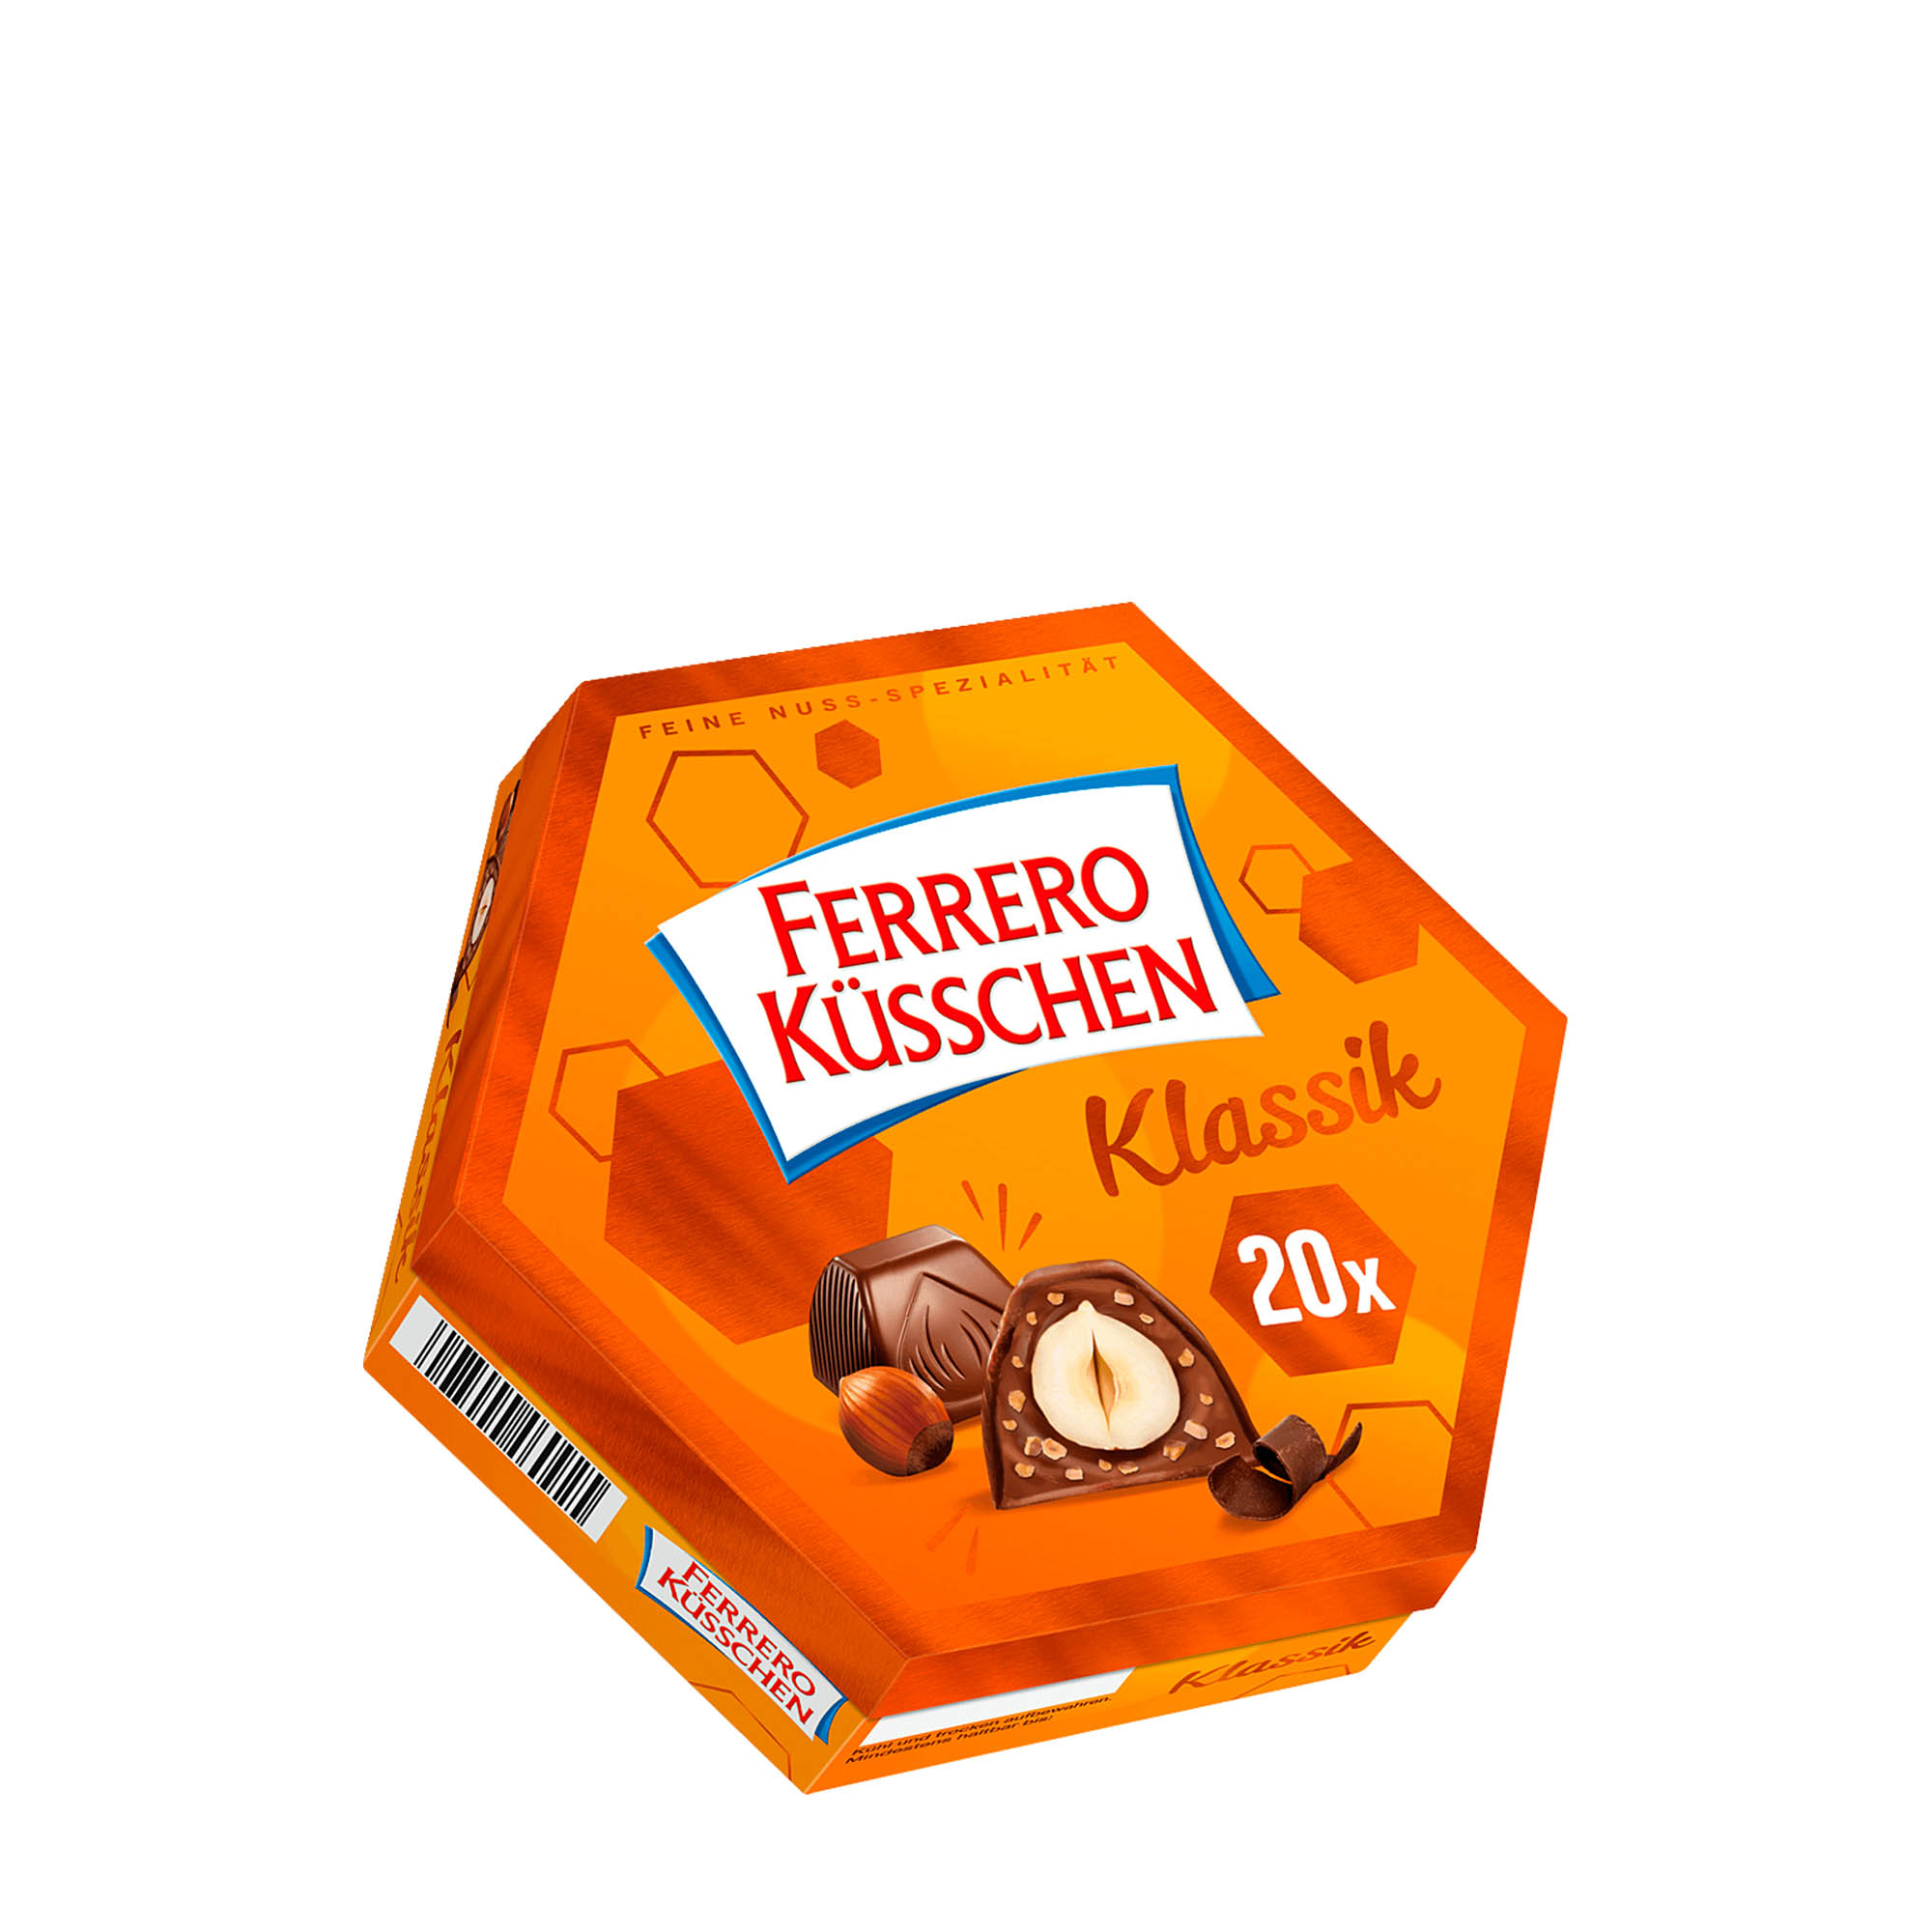 ferrero kusschen dark milk chocolate bites classic hazelnut 20ct